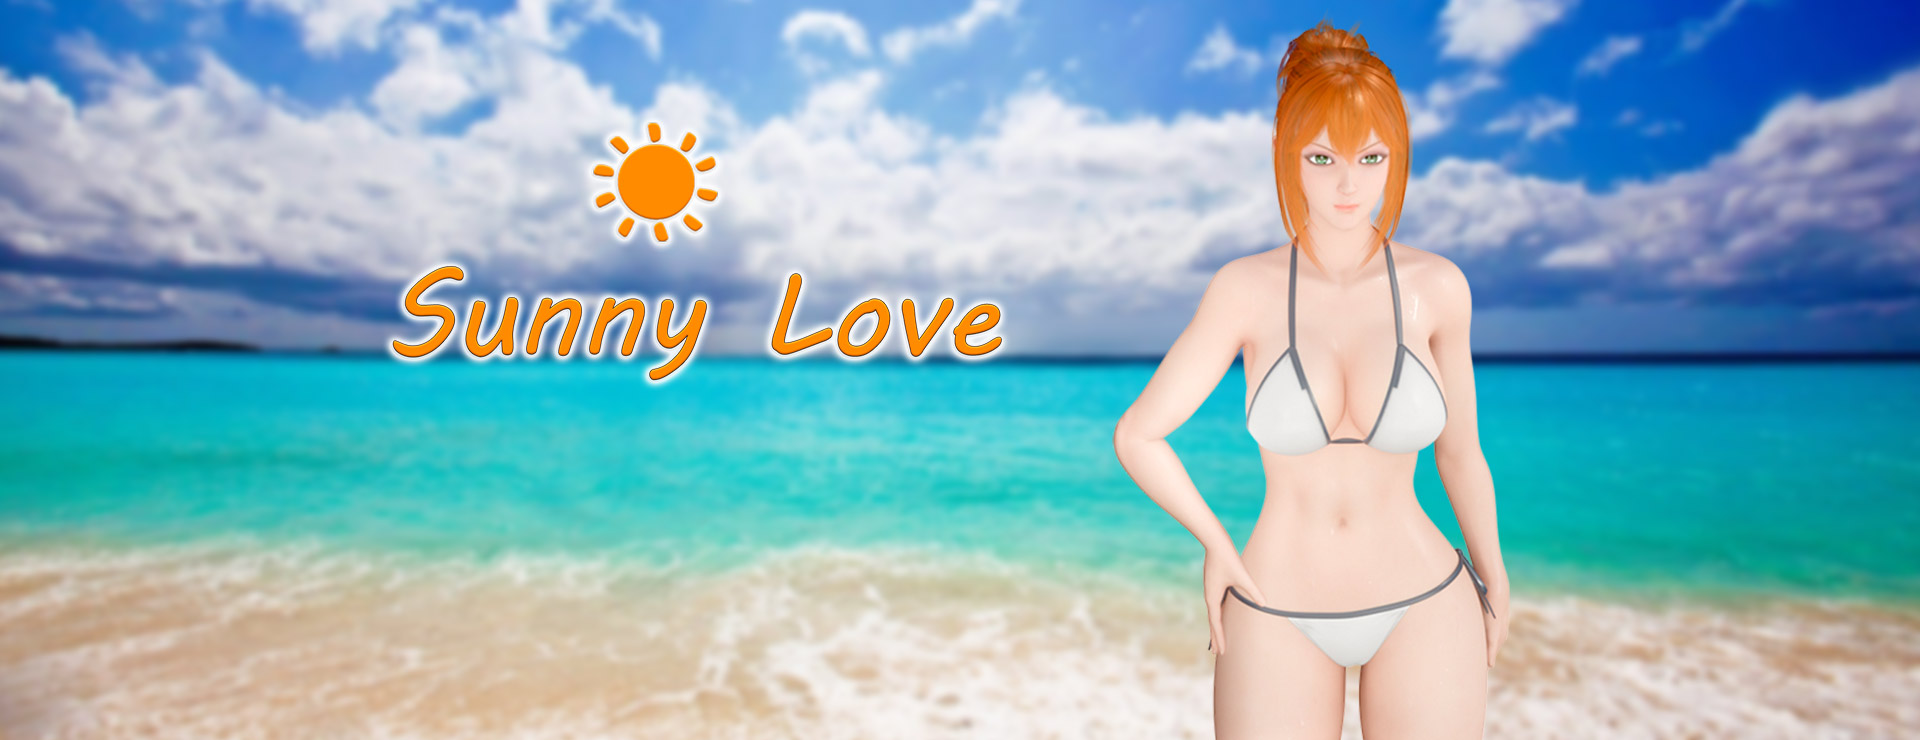 Sunny Love - Roman Visuel Jeu